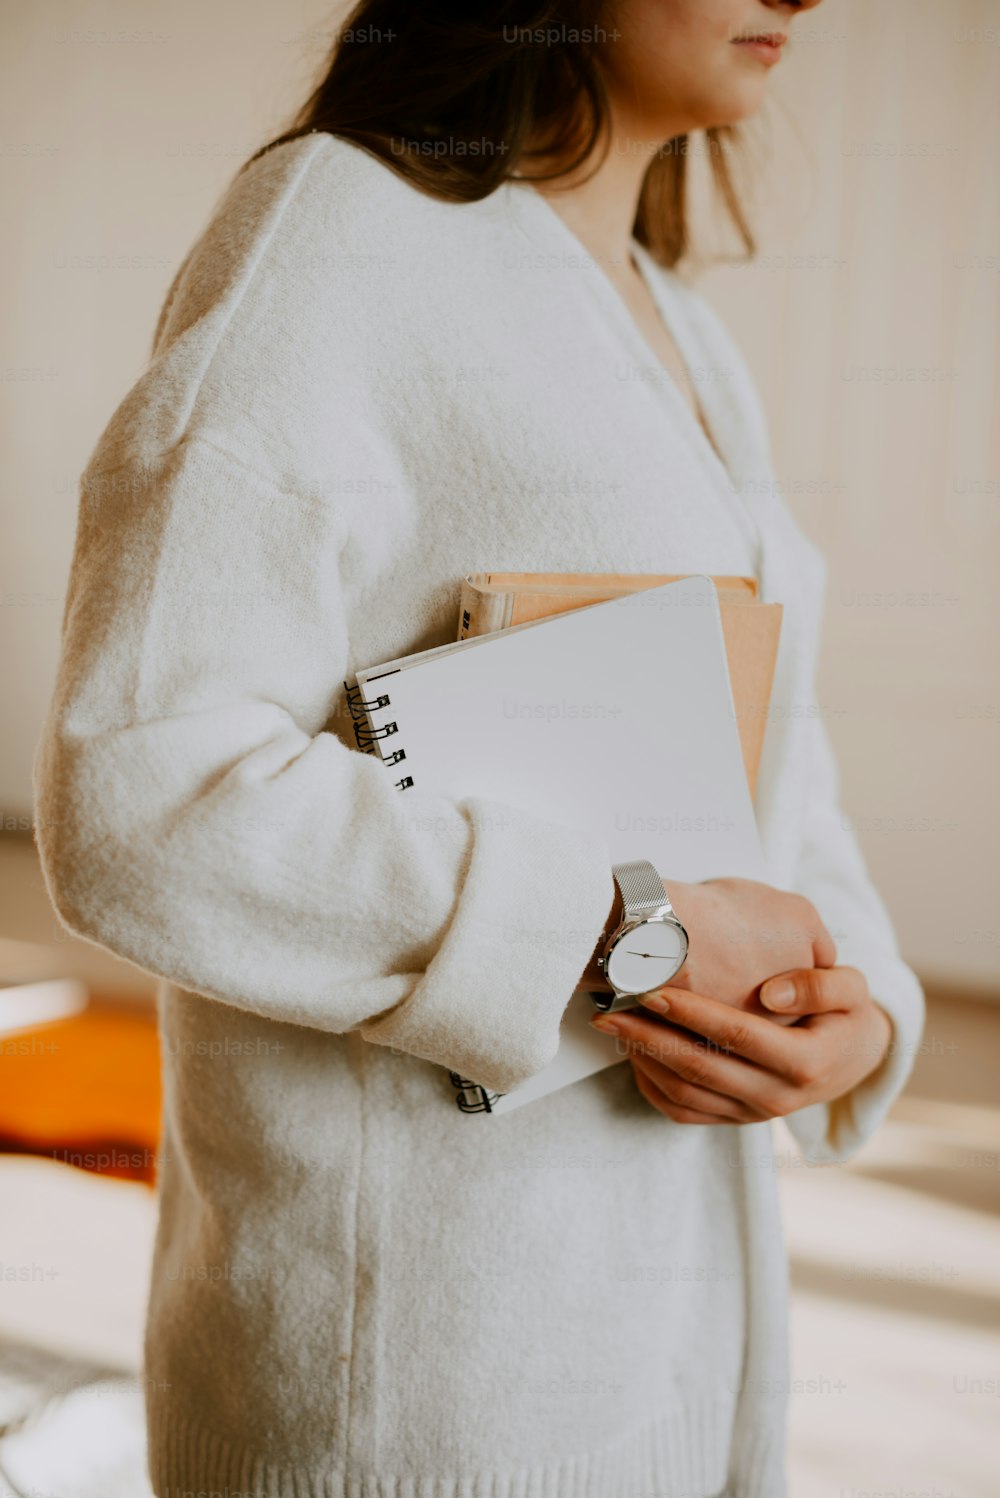 Eine Frau in einem weißen Pullover, die ein Notizbuch und eine Uhr hält